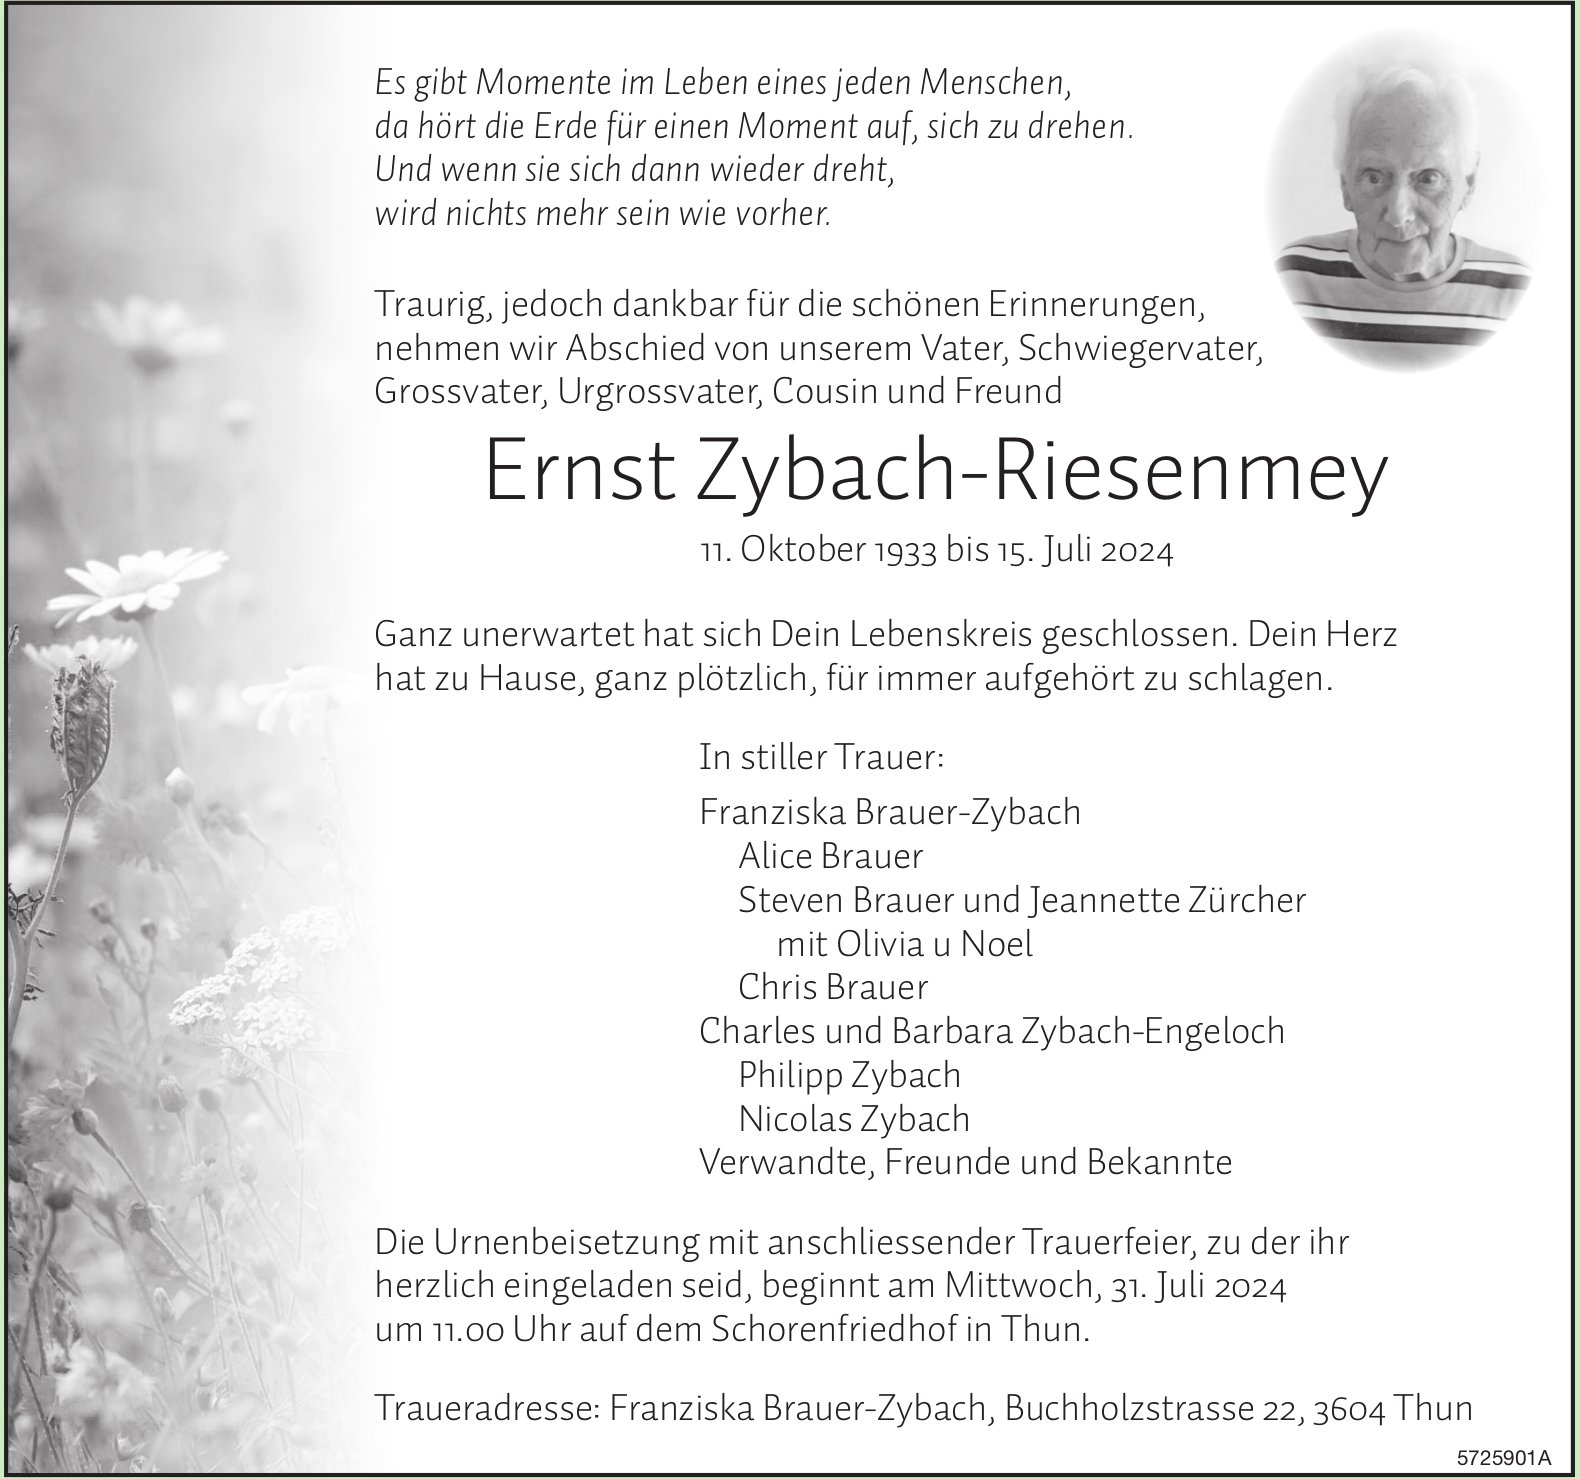 Zybach-Riesenmey Ernst, Juli 2024 / TA